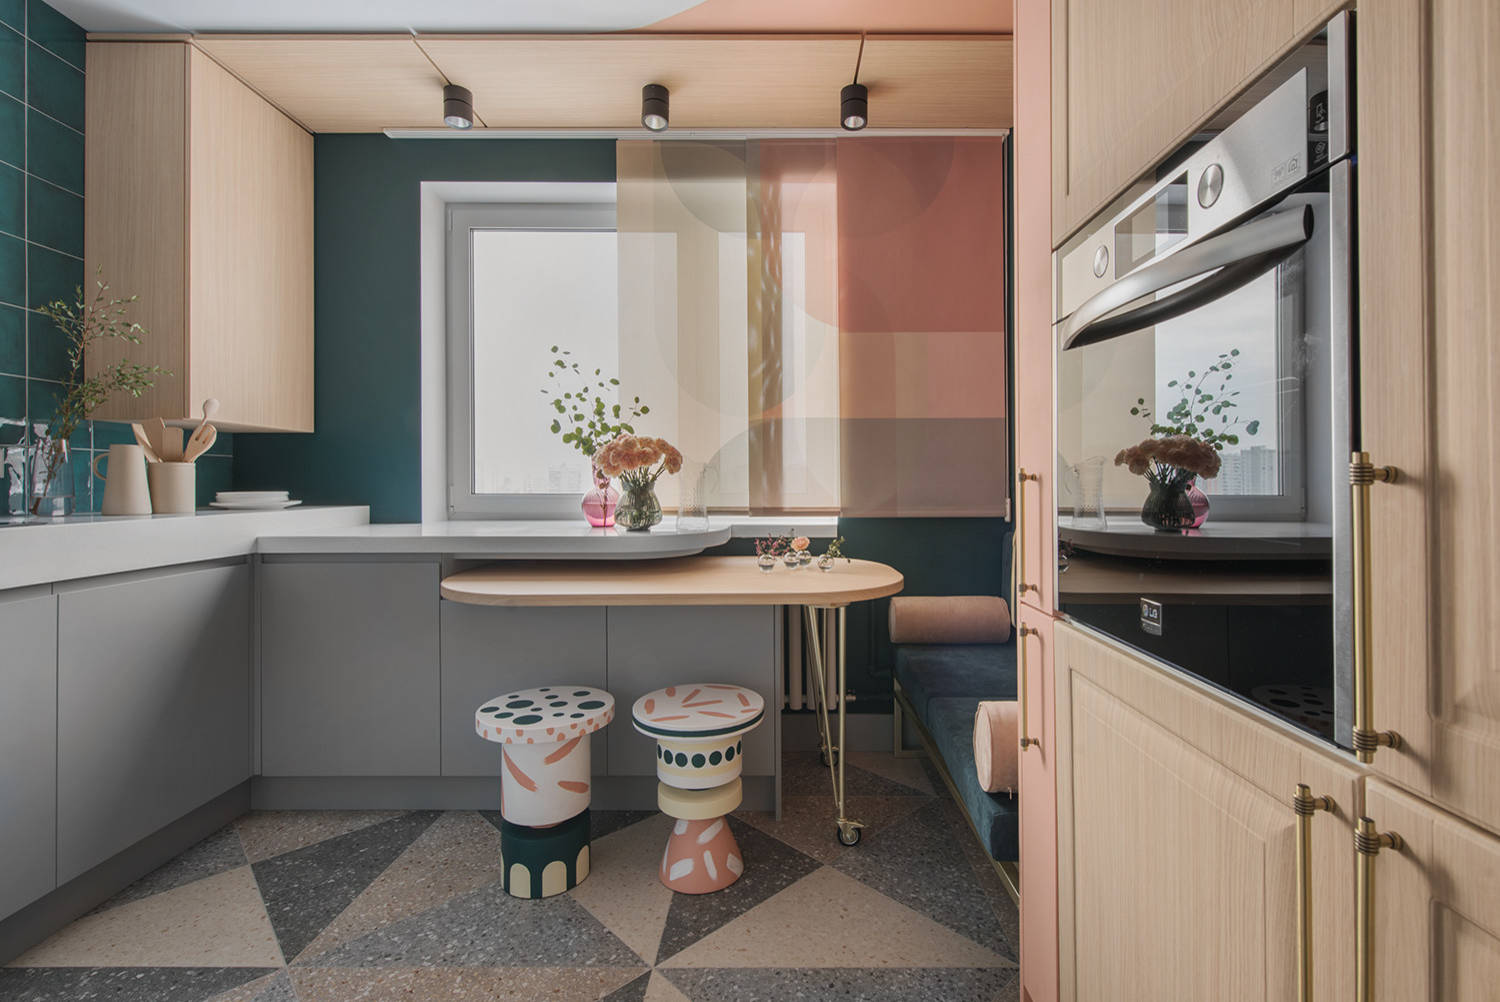 Дизайн интерьера кухни площадью 10 кв м (48 фото интерьера)